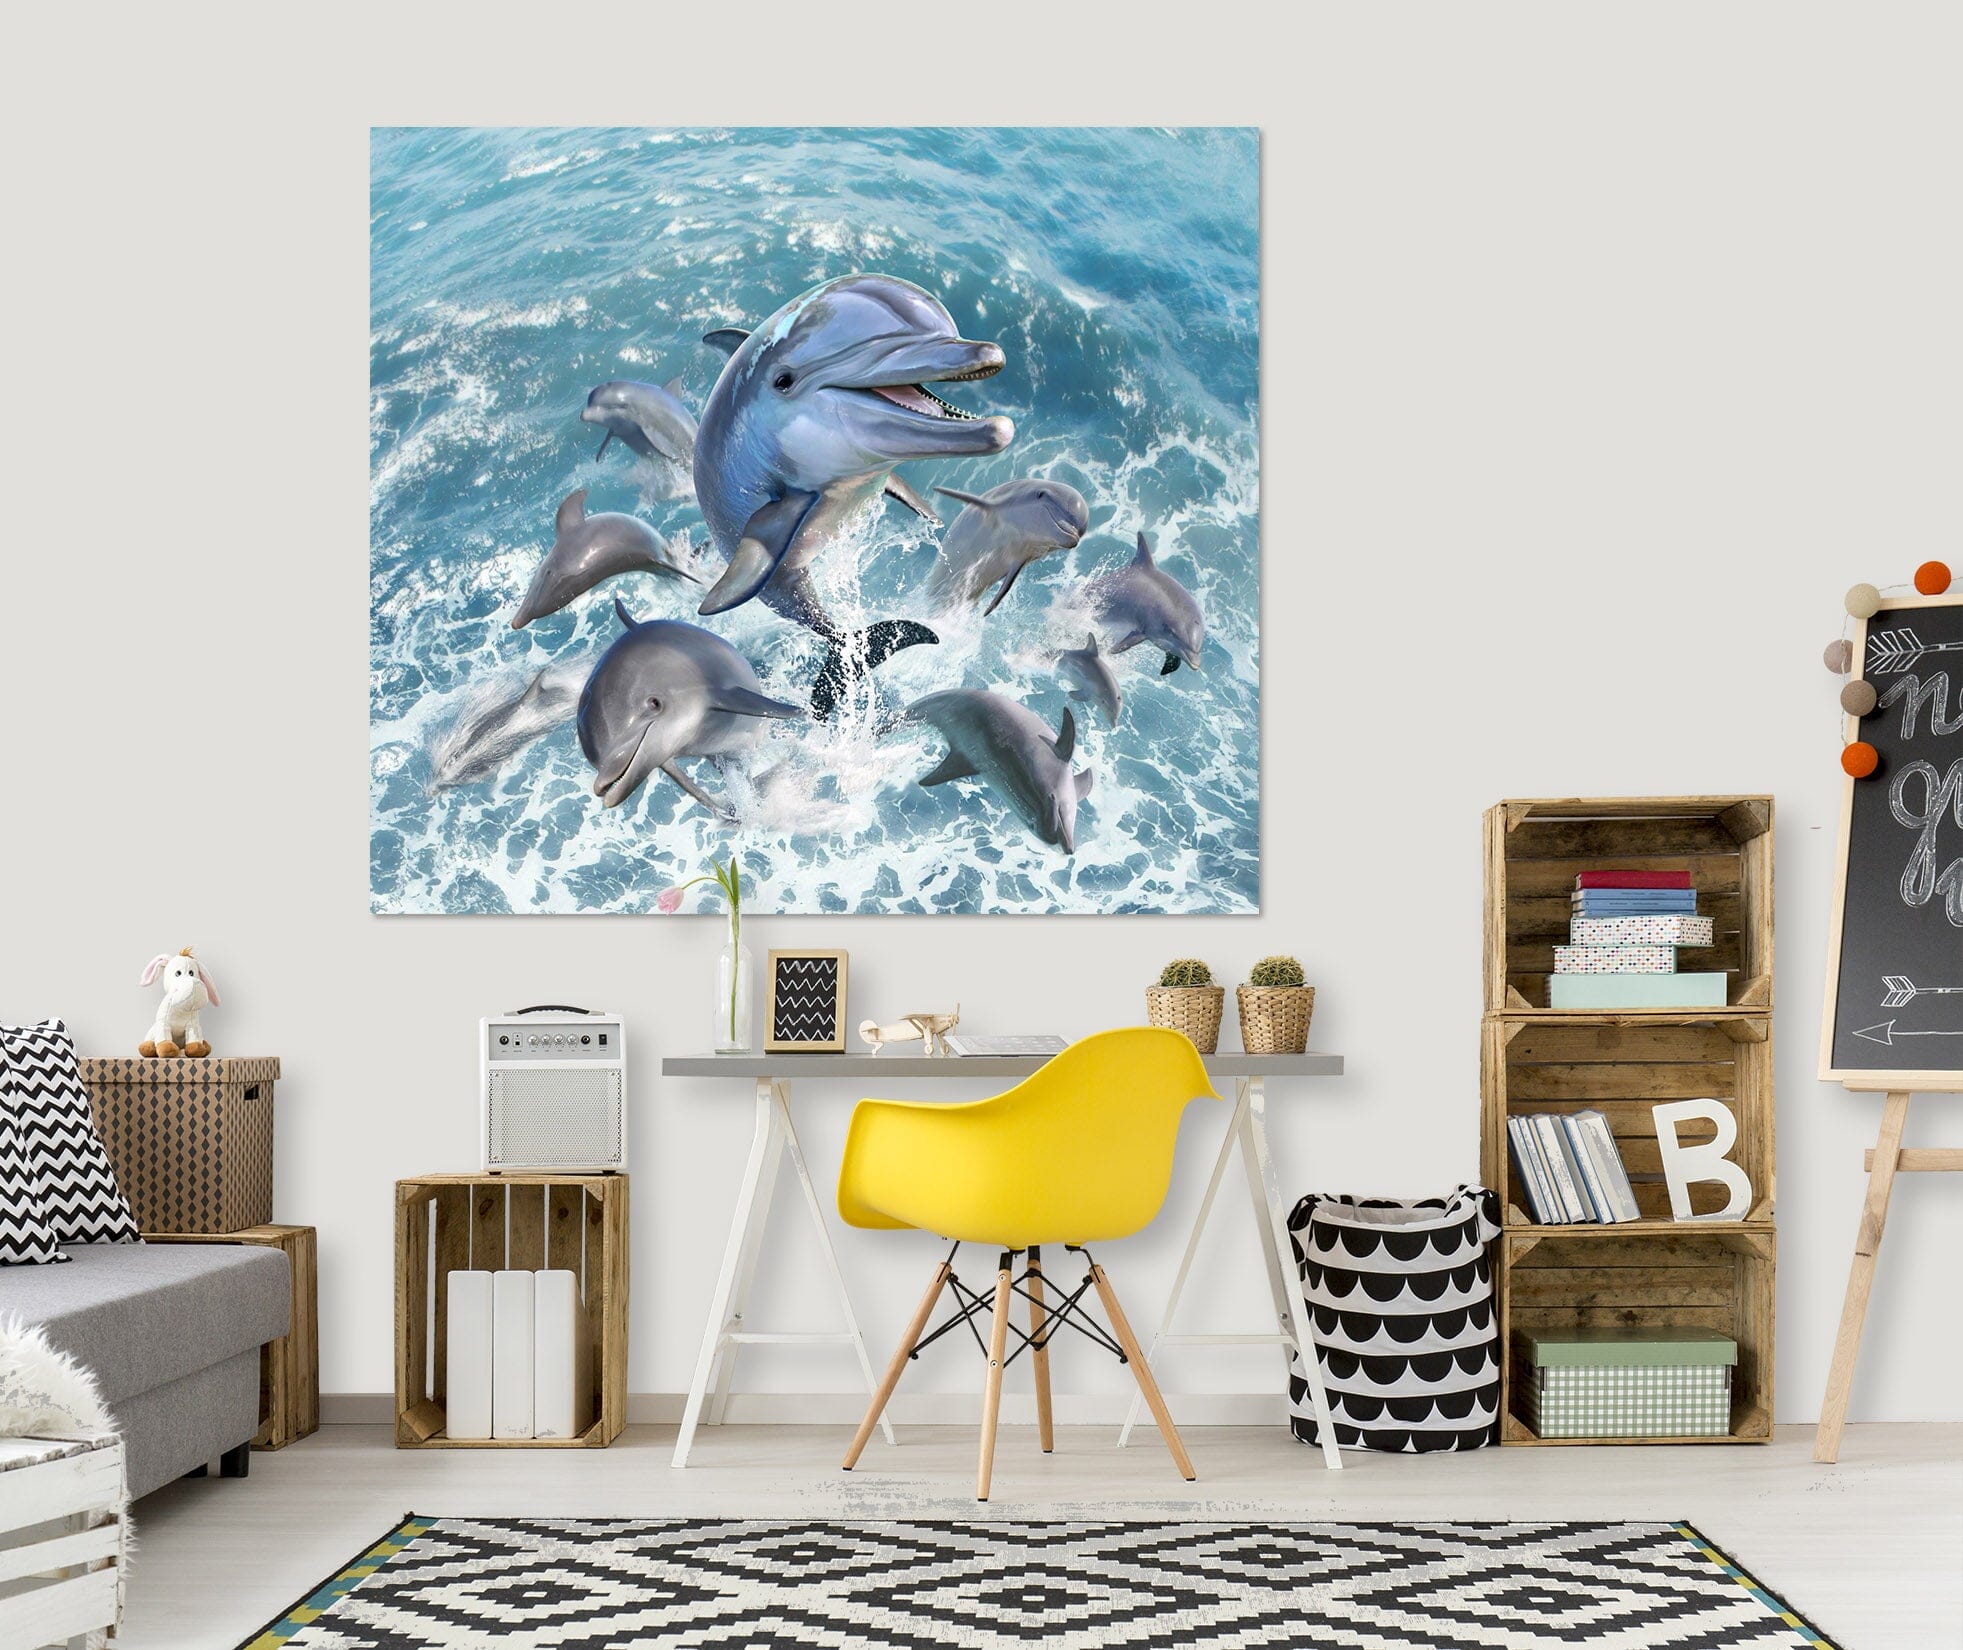 3D Dolphin Jump 015 Jerry LoFaro Wall Sticker Wallpaper AJ Wallpaper 2 